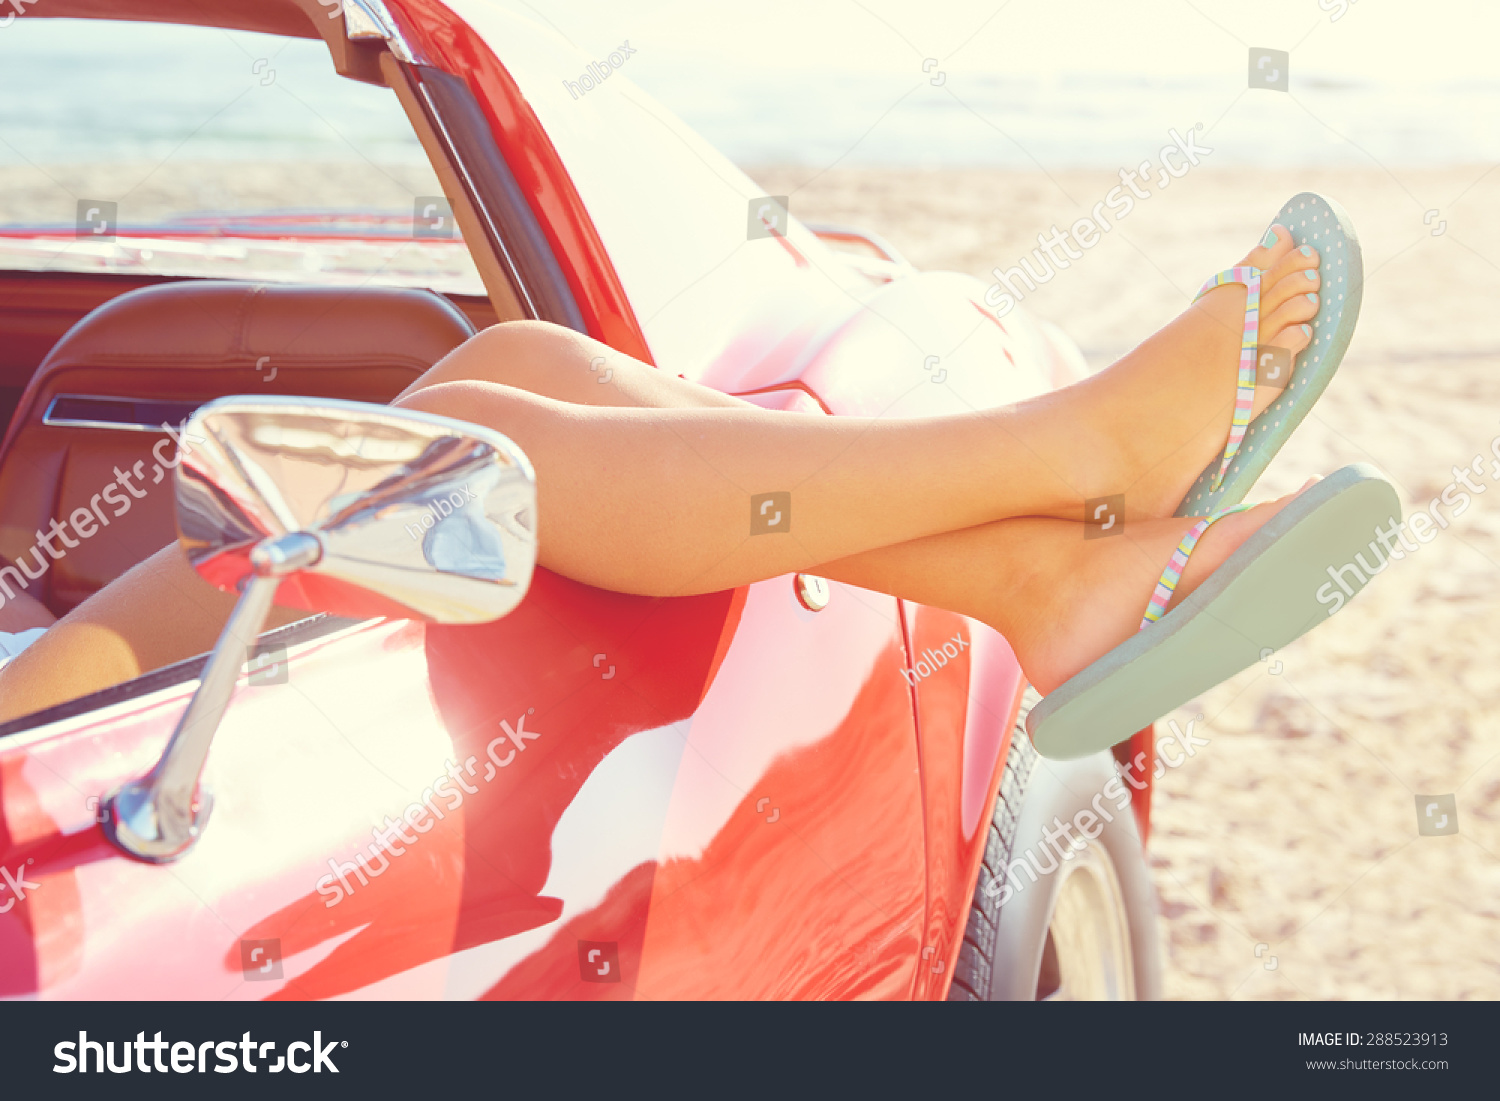 Woman Legs Car 13 714 Ảnh Vector Và Hình Chụp Có Sẵn Shutterstock